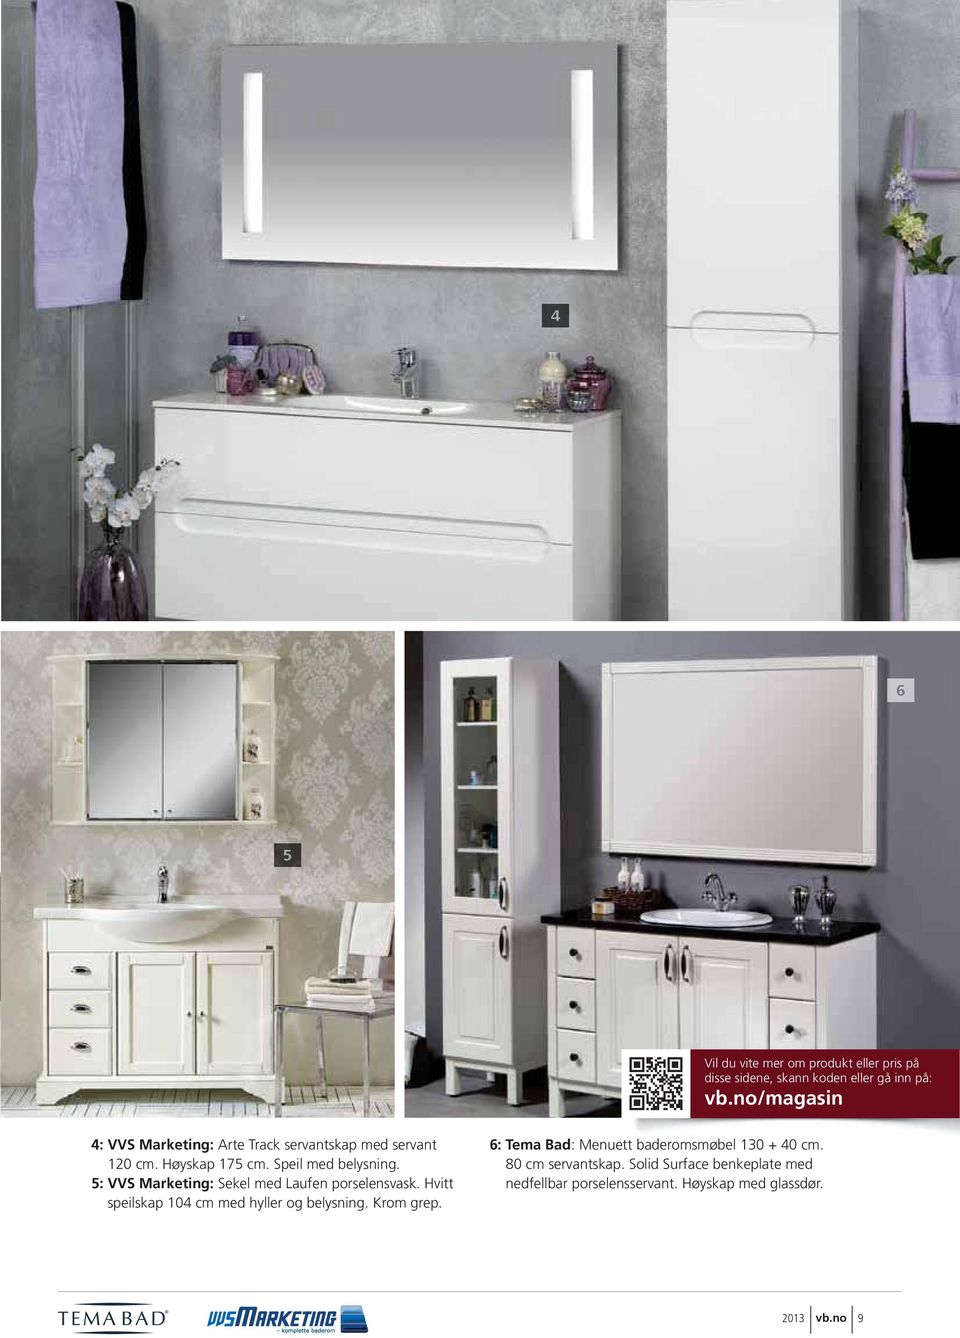 5: VVS Marketing: Sekel med Laufen porselensvask. Hvitt speilskap 104 cm med hyller og belysning. Krom grep.